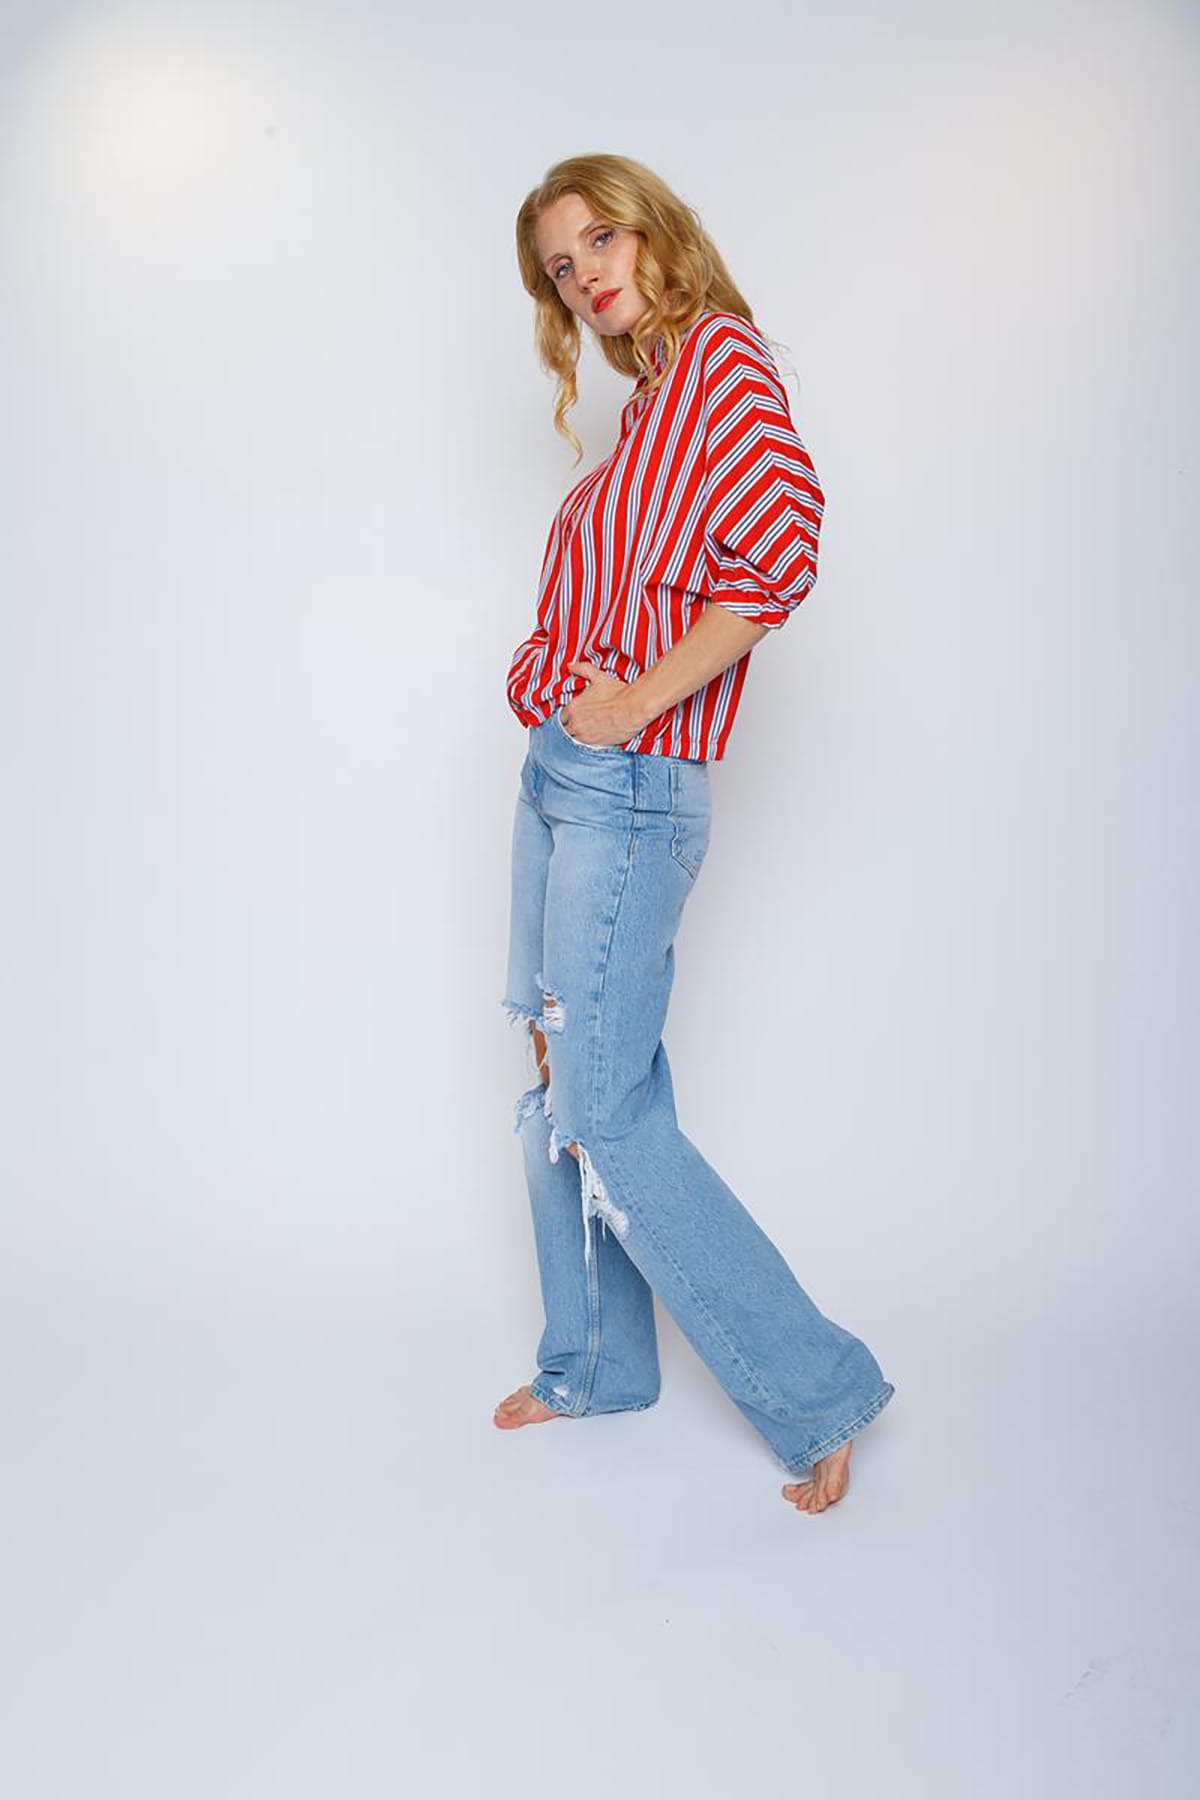 Lockere, gestreifte Hemdbluse red azur stripe Bluse Emily van den Bergh 